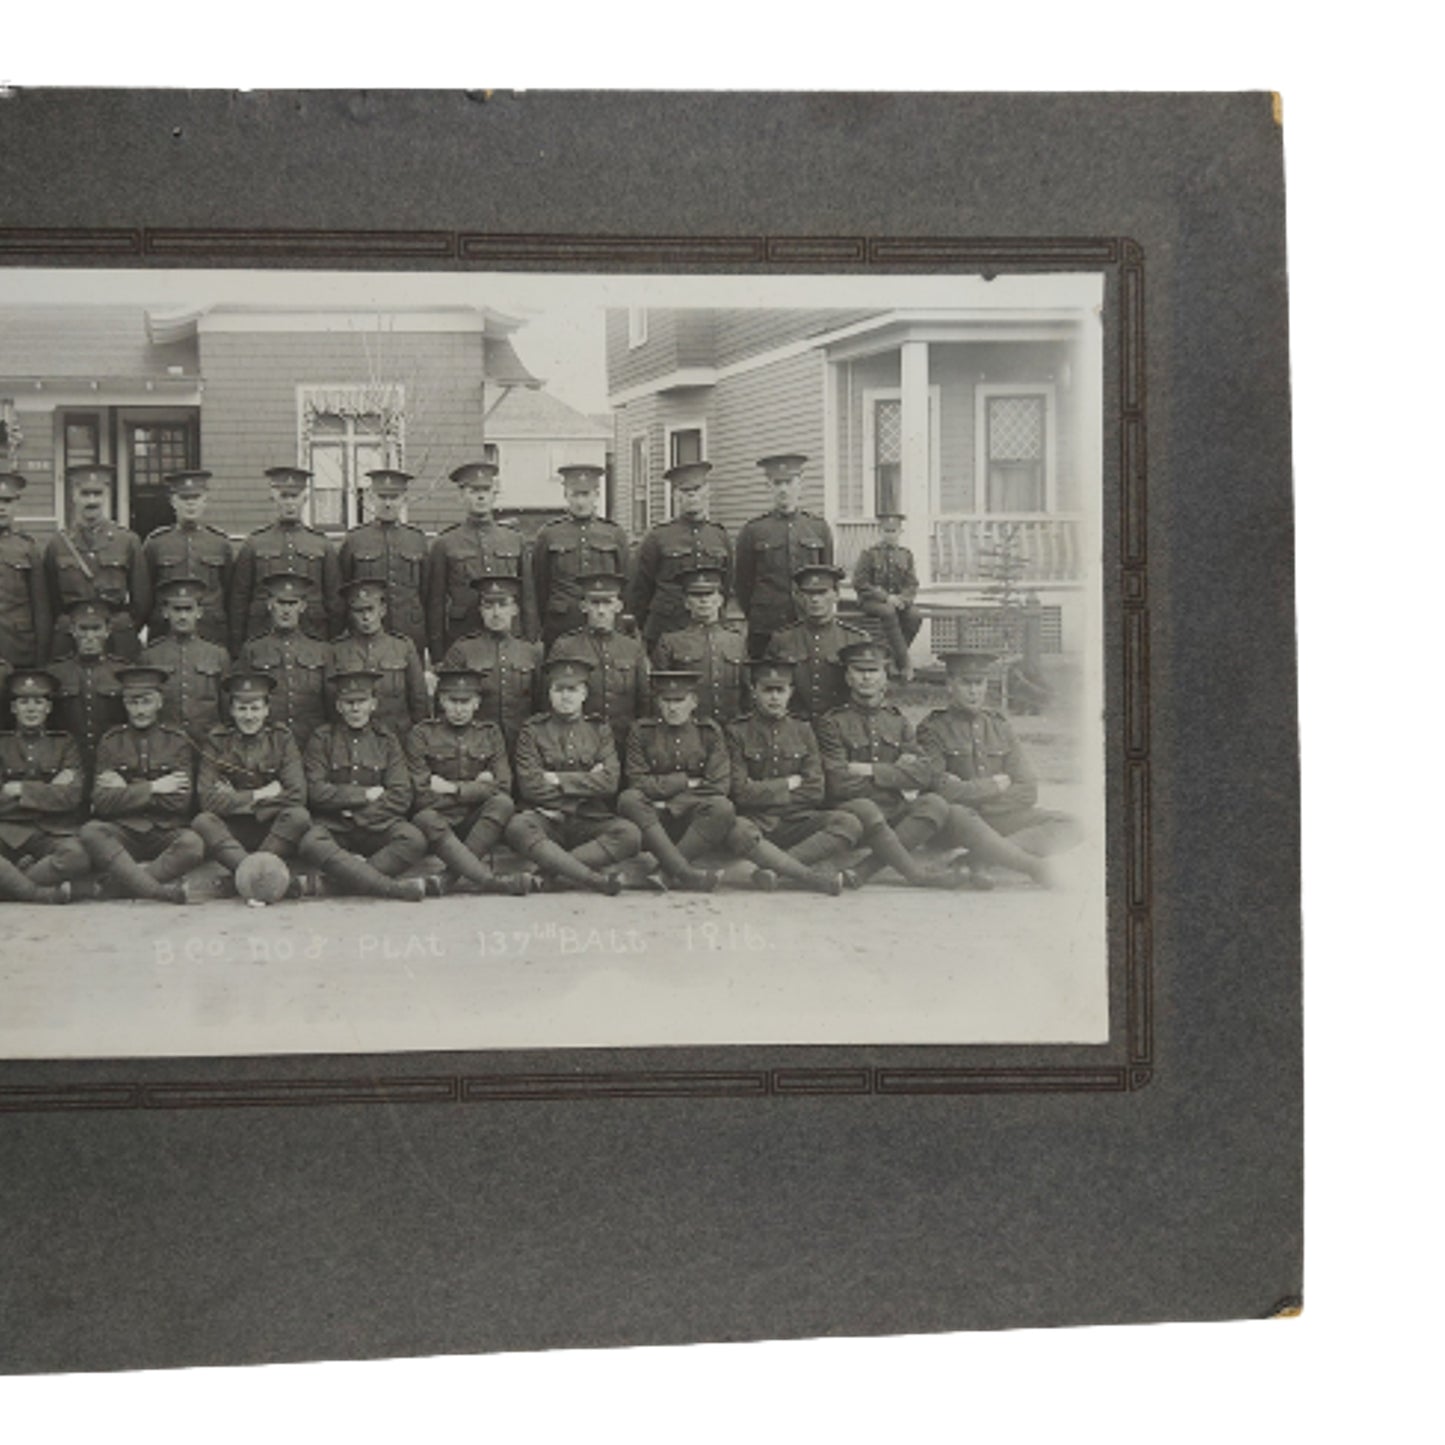 WW1 Canadian Battalion Photo On Matte Board - 137th Battalion Calgary, Alberta